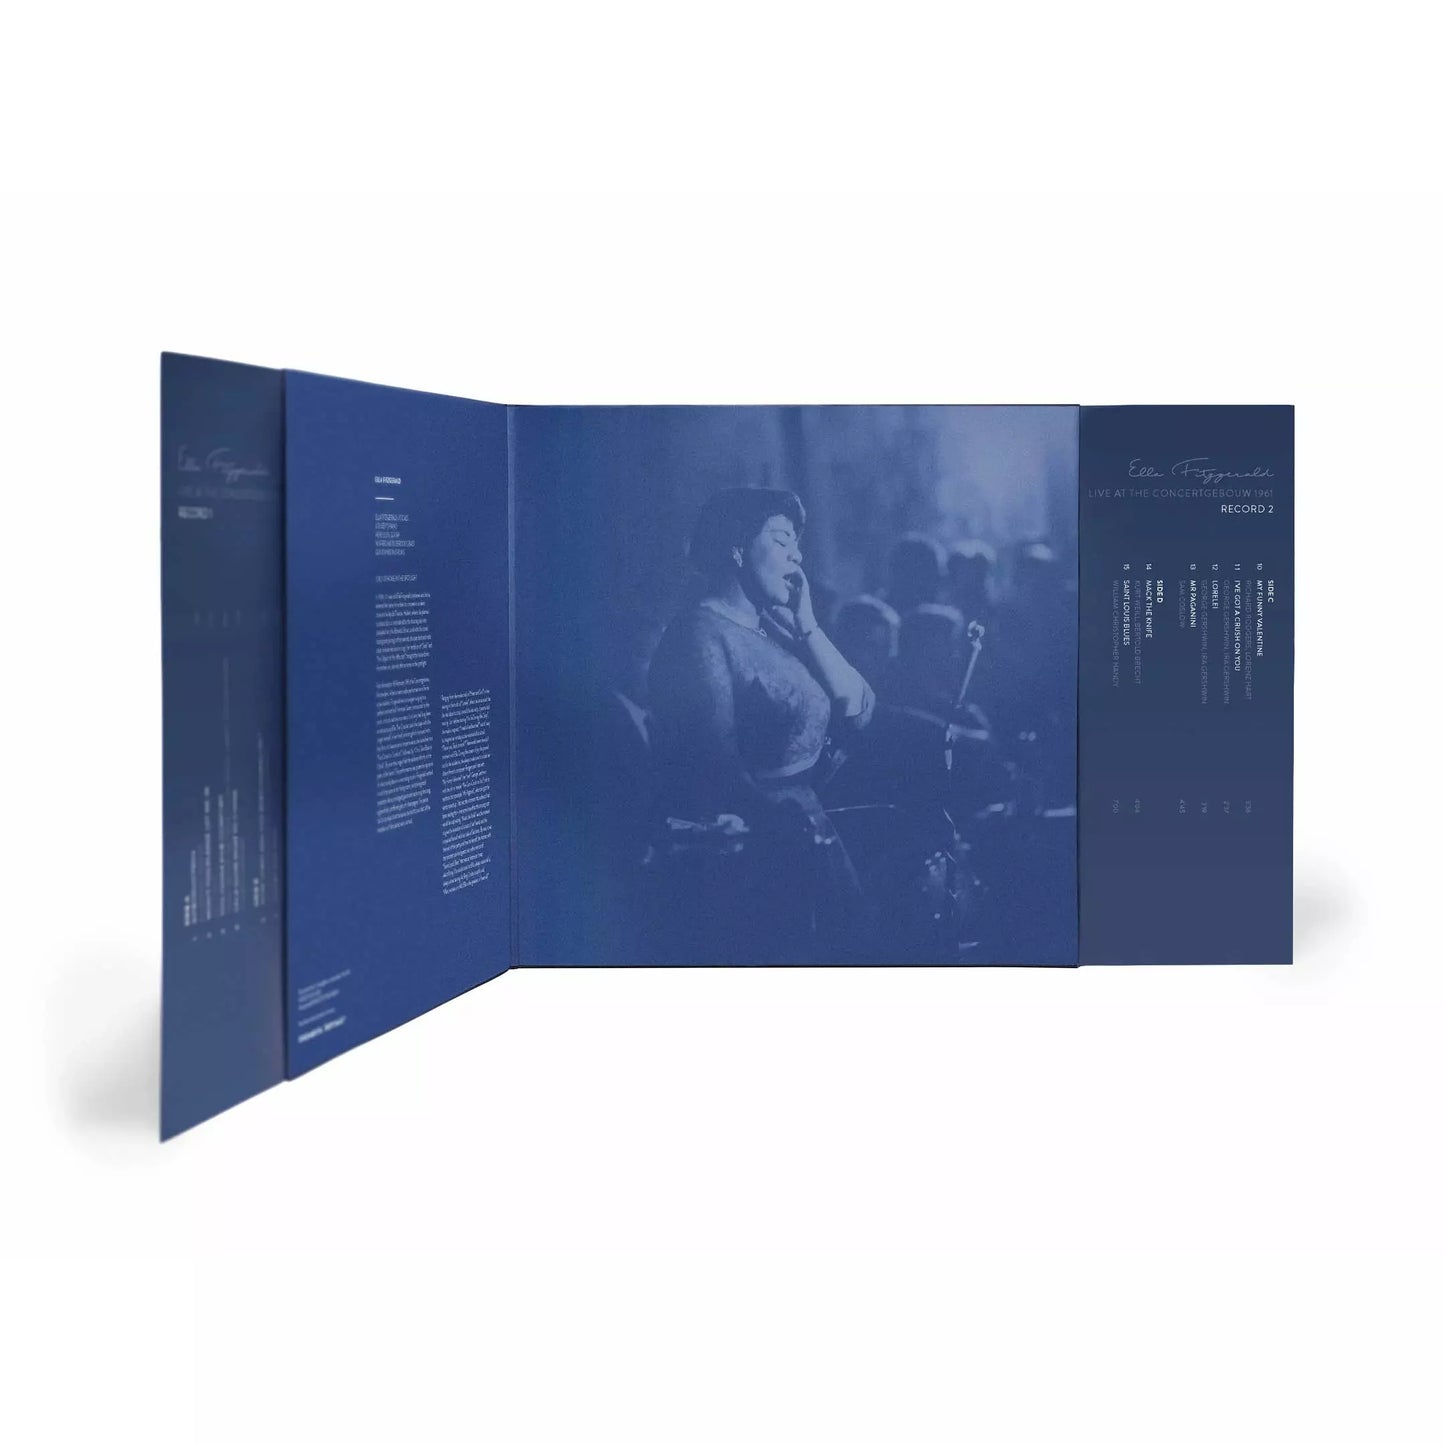 Ella Fitzgerald - Live at the Concertgebouw 1961 - The Lost Recordings LP